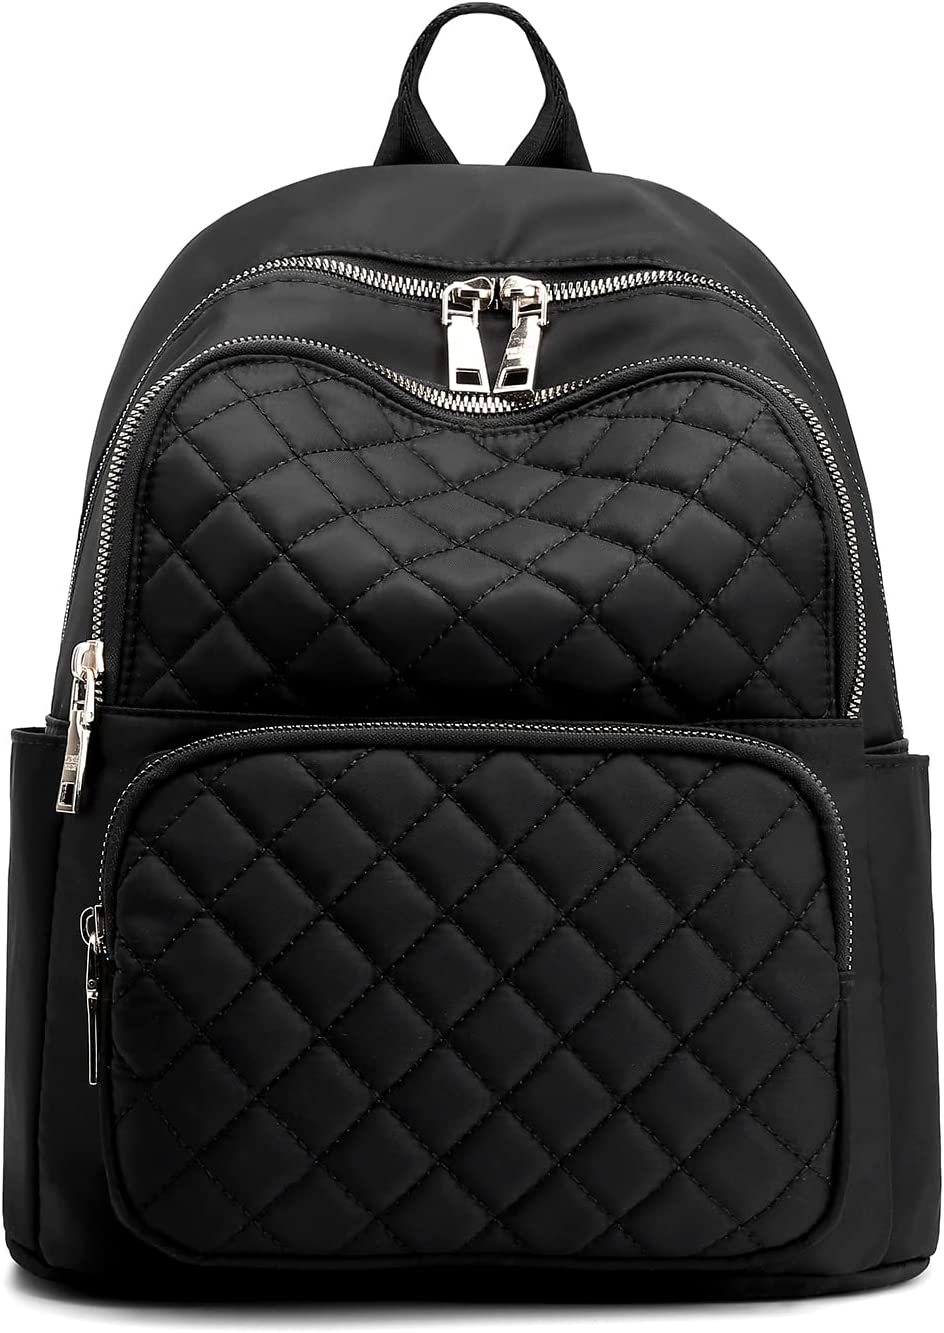 Medium black waterproof lightweight backpack